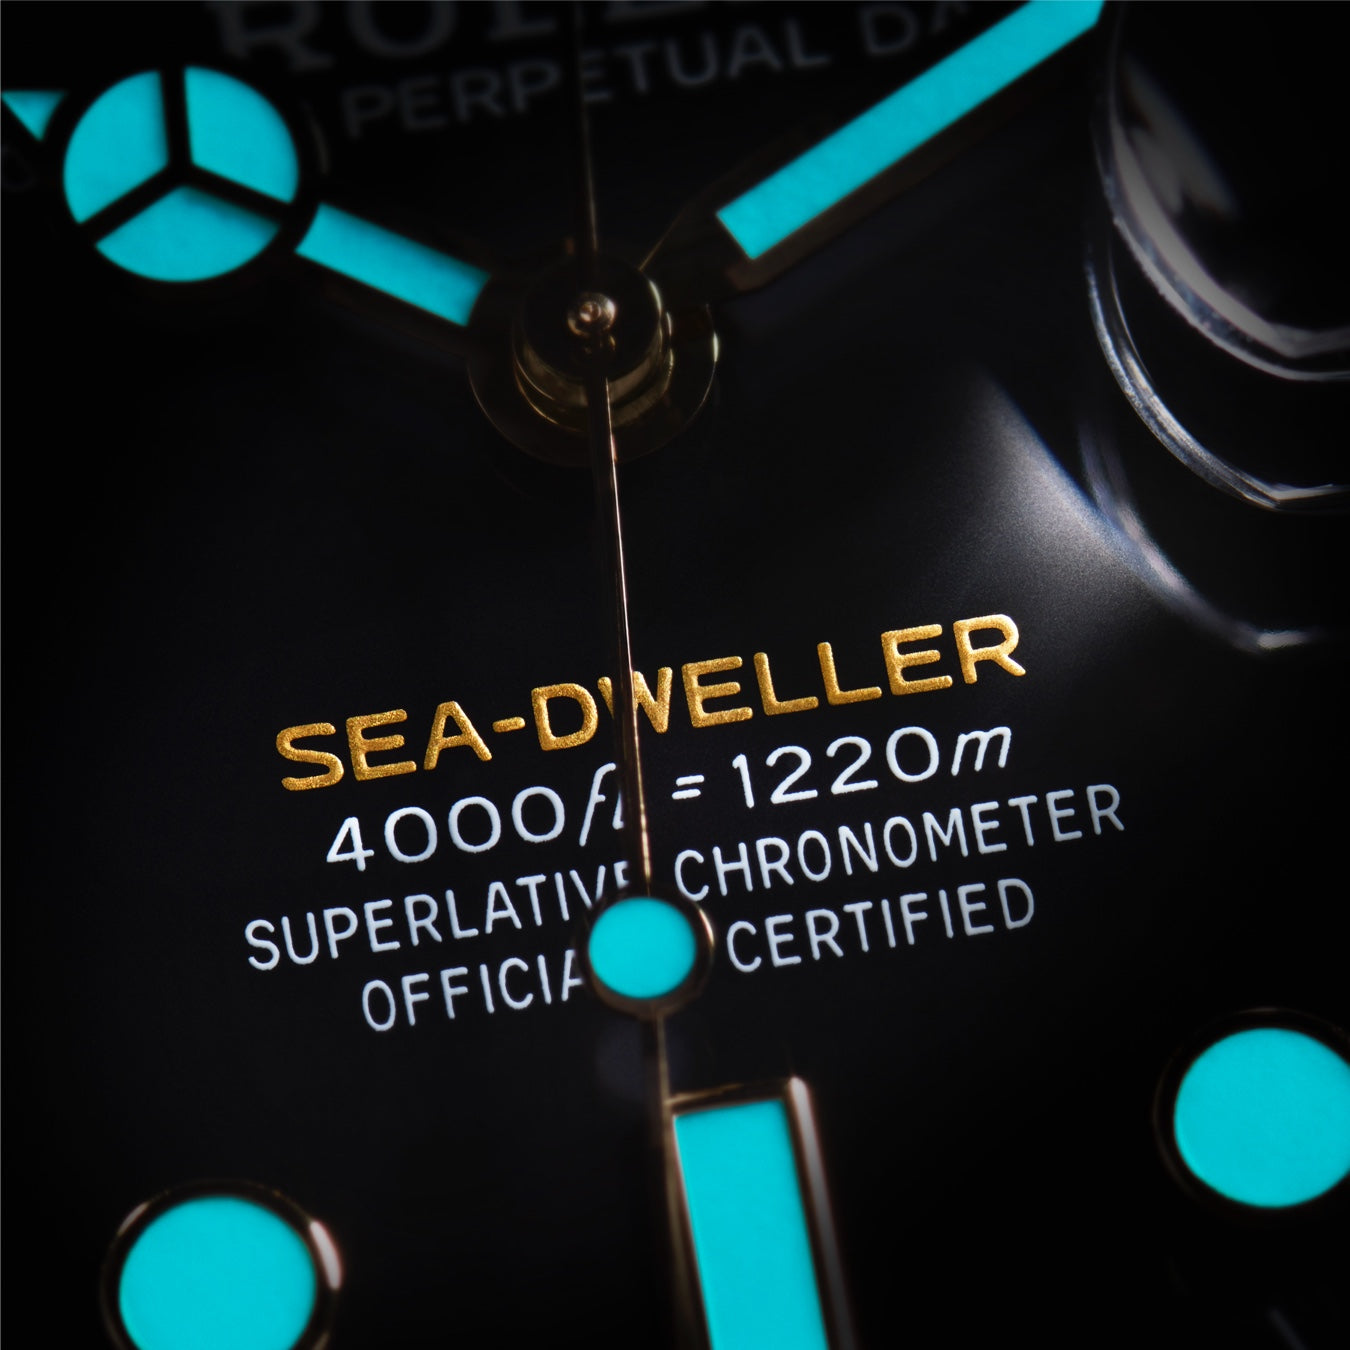 Citizen of the Deep - Rolex Sea-Dweller | Howard Fine Jewellers - Official Rolex Retailer